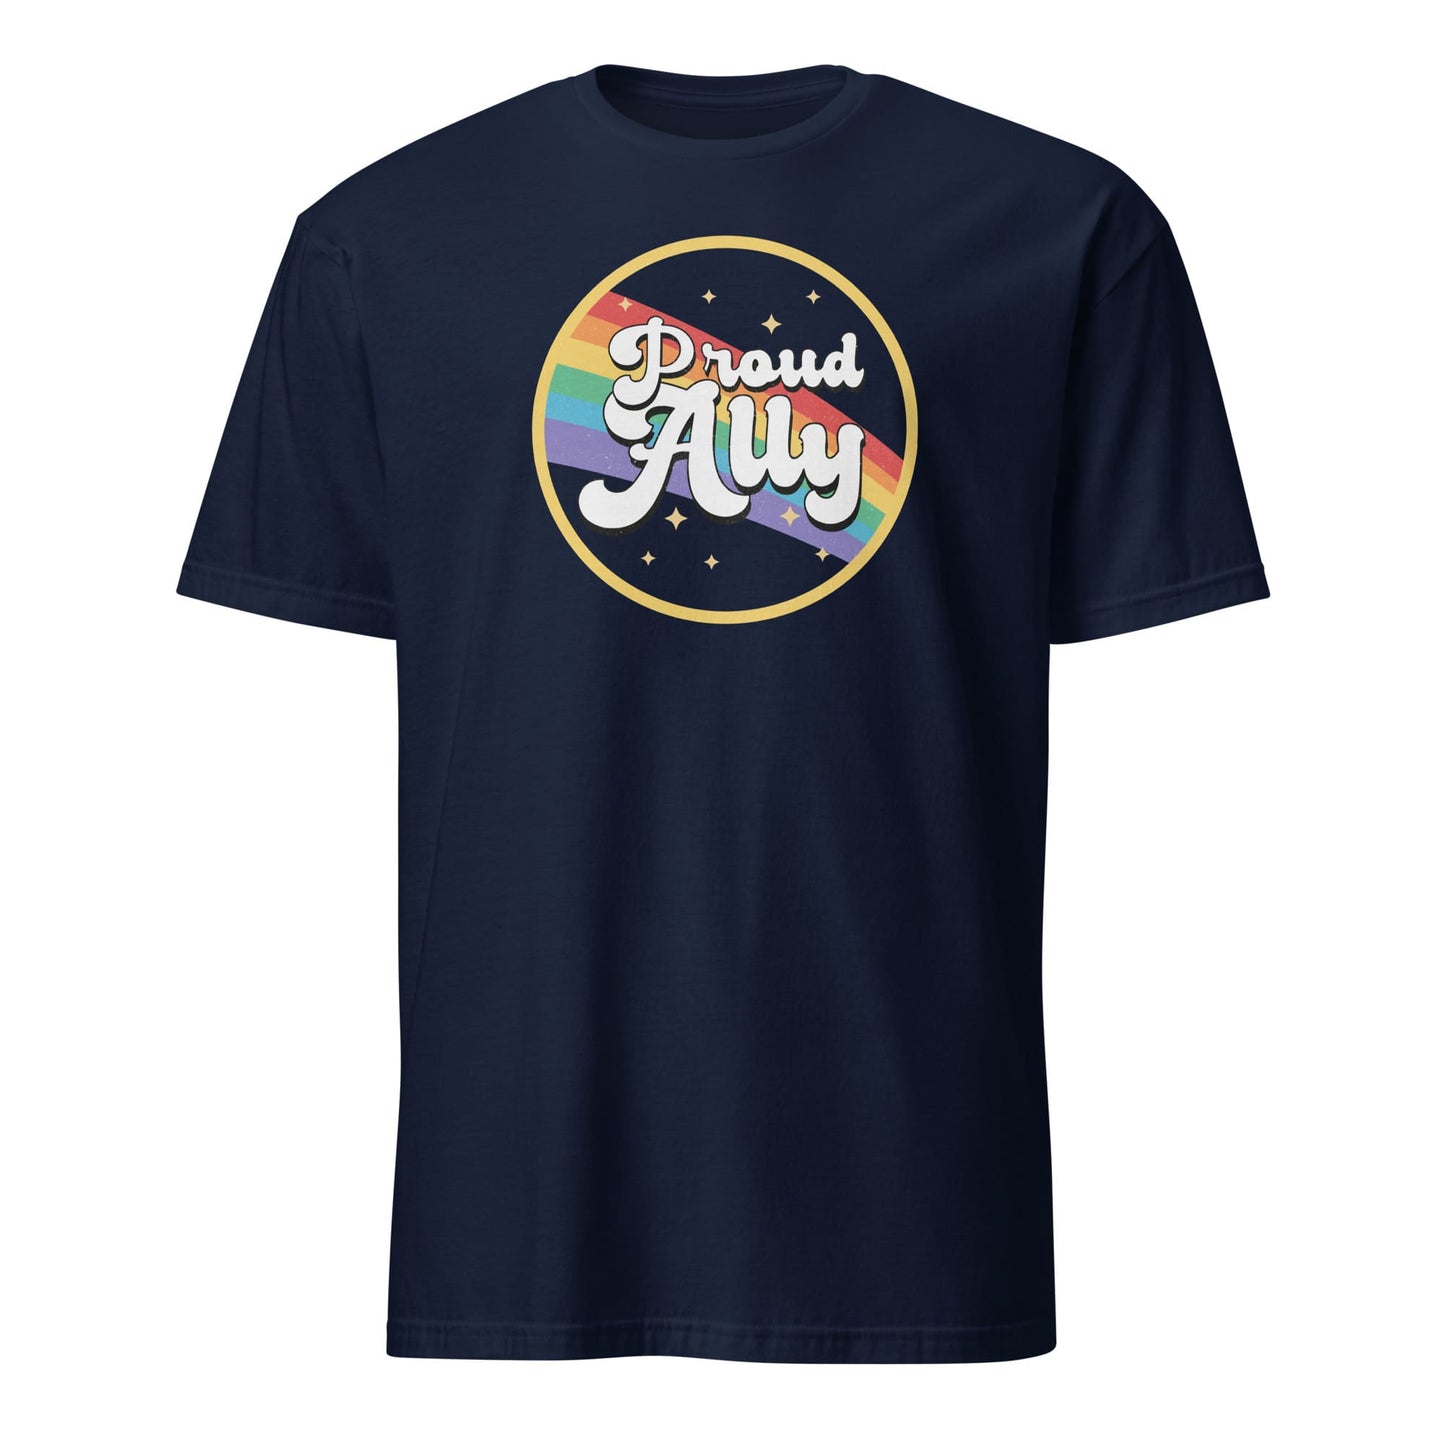 LGBT ally shirt, navy